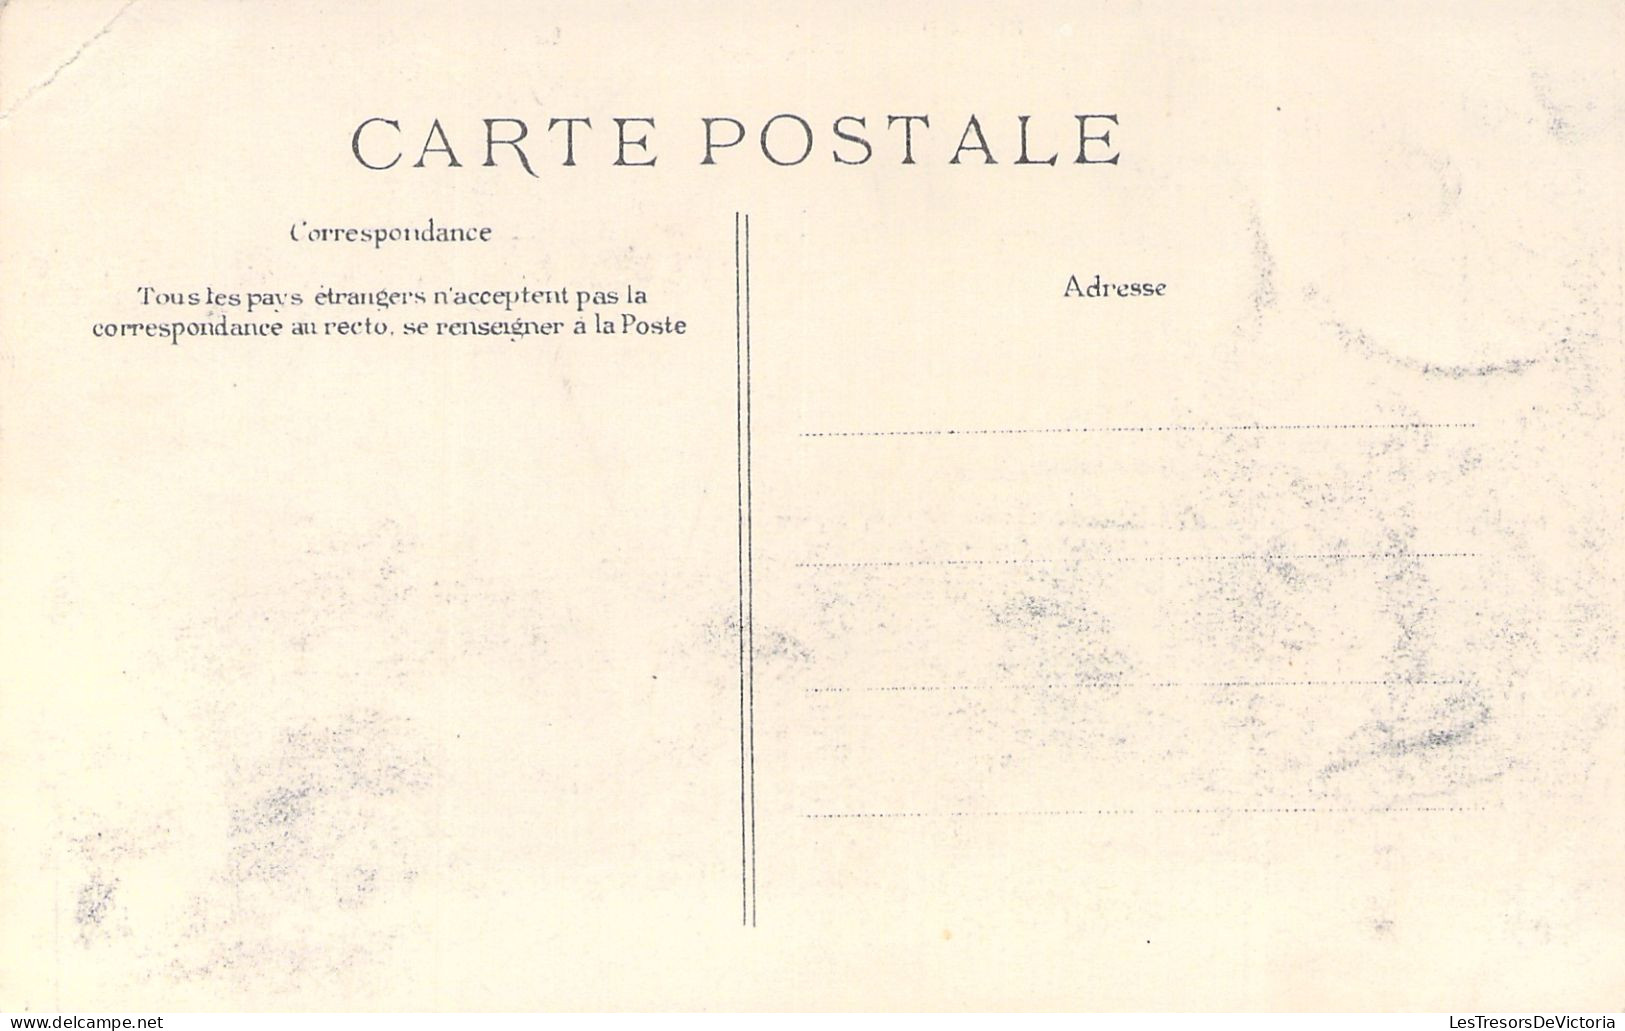 FRANCE - Paris - La Grande Crue De La Seine - L'estacade - 27 Janvier 1910 - Carte Postale Ancienne - Die Seine Und Ihre Ufer